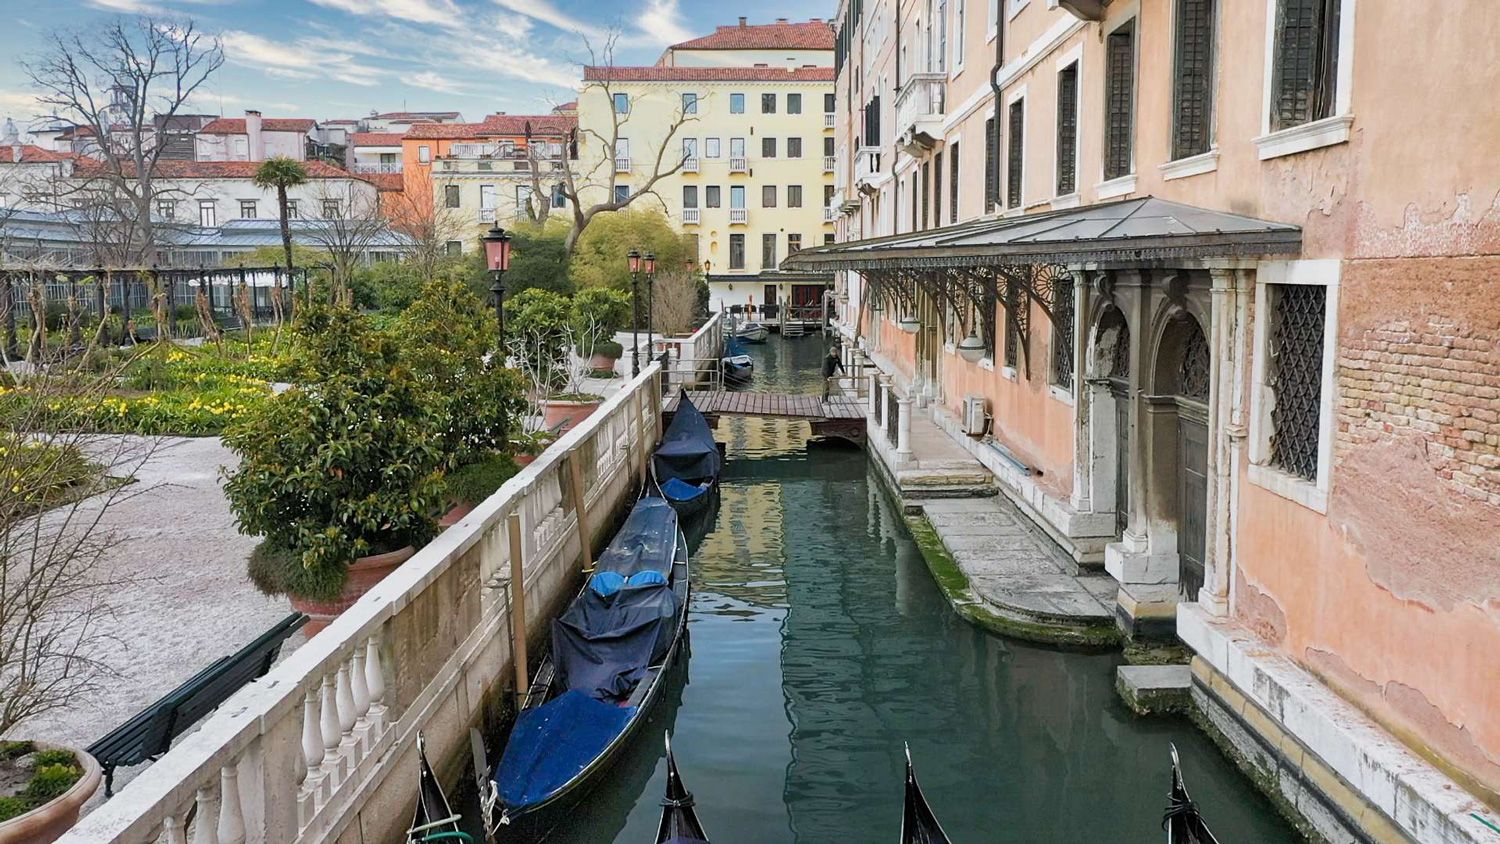 Venice Royal Gardens receive the European Prize for Cultural Heritage / Europa Nostra Award 2023 - Bridge